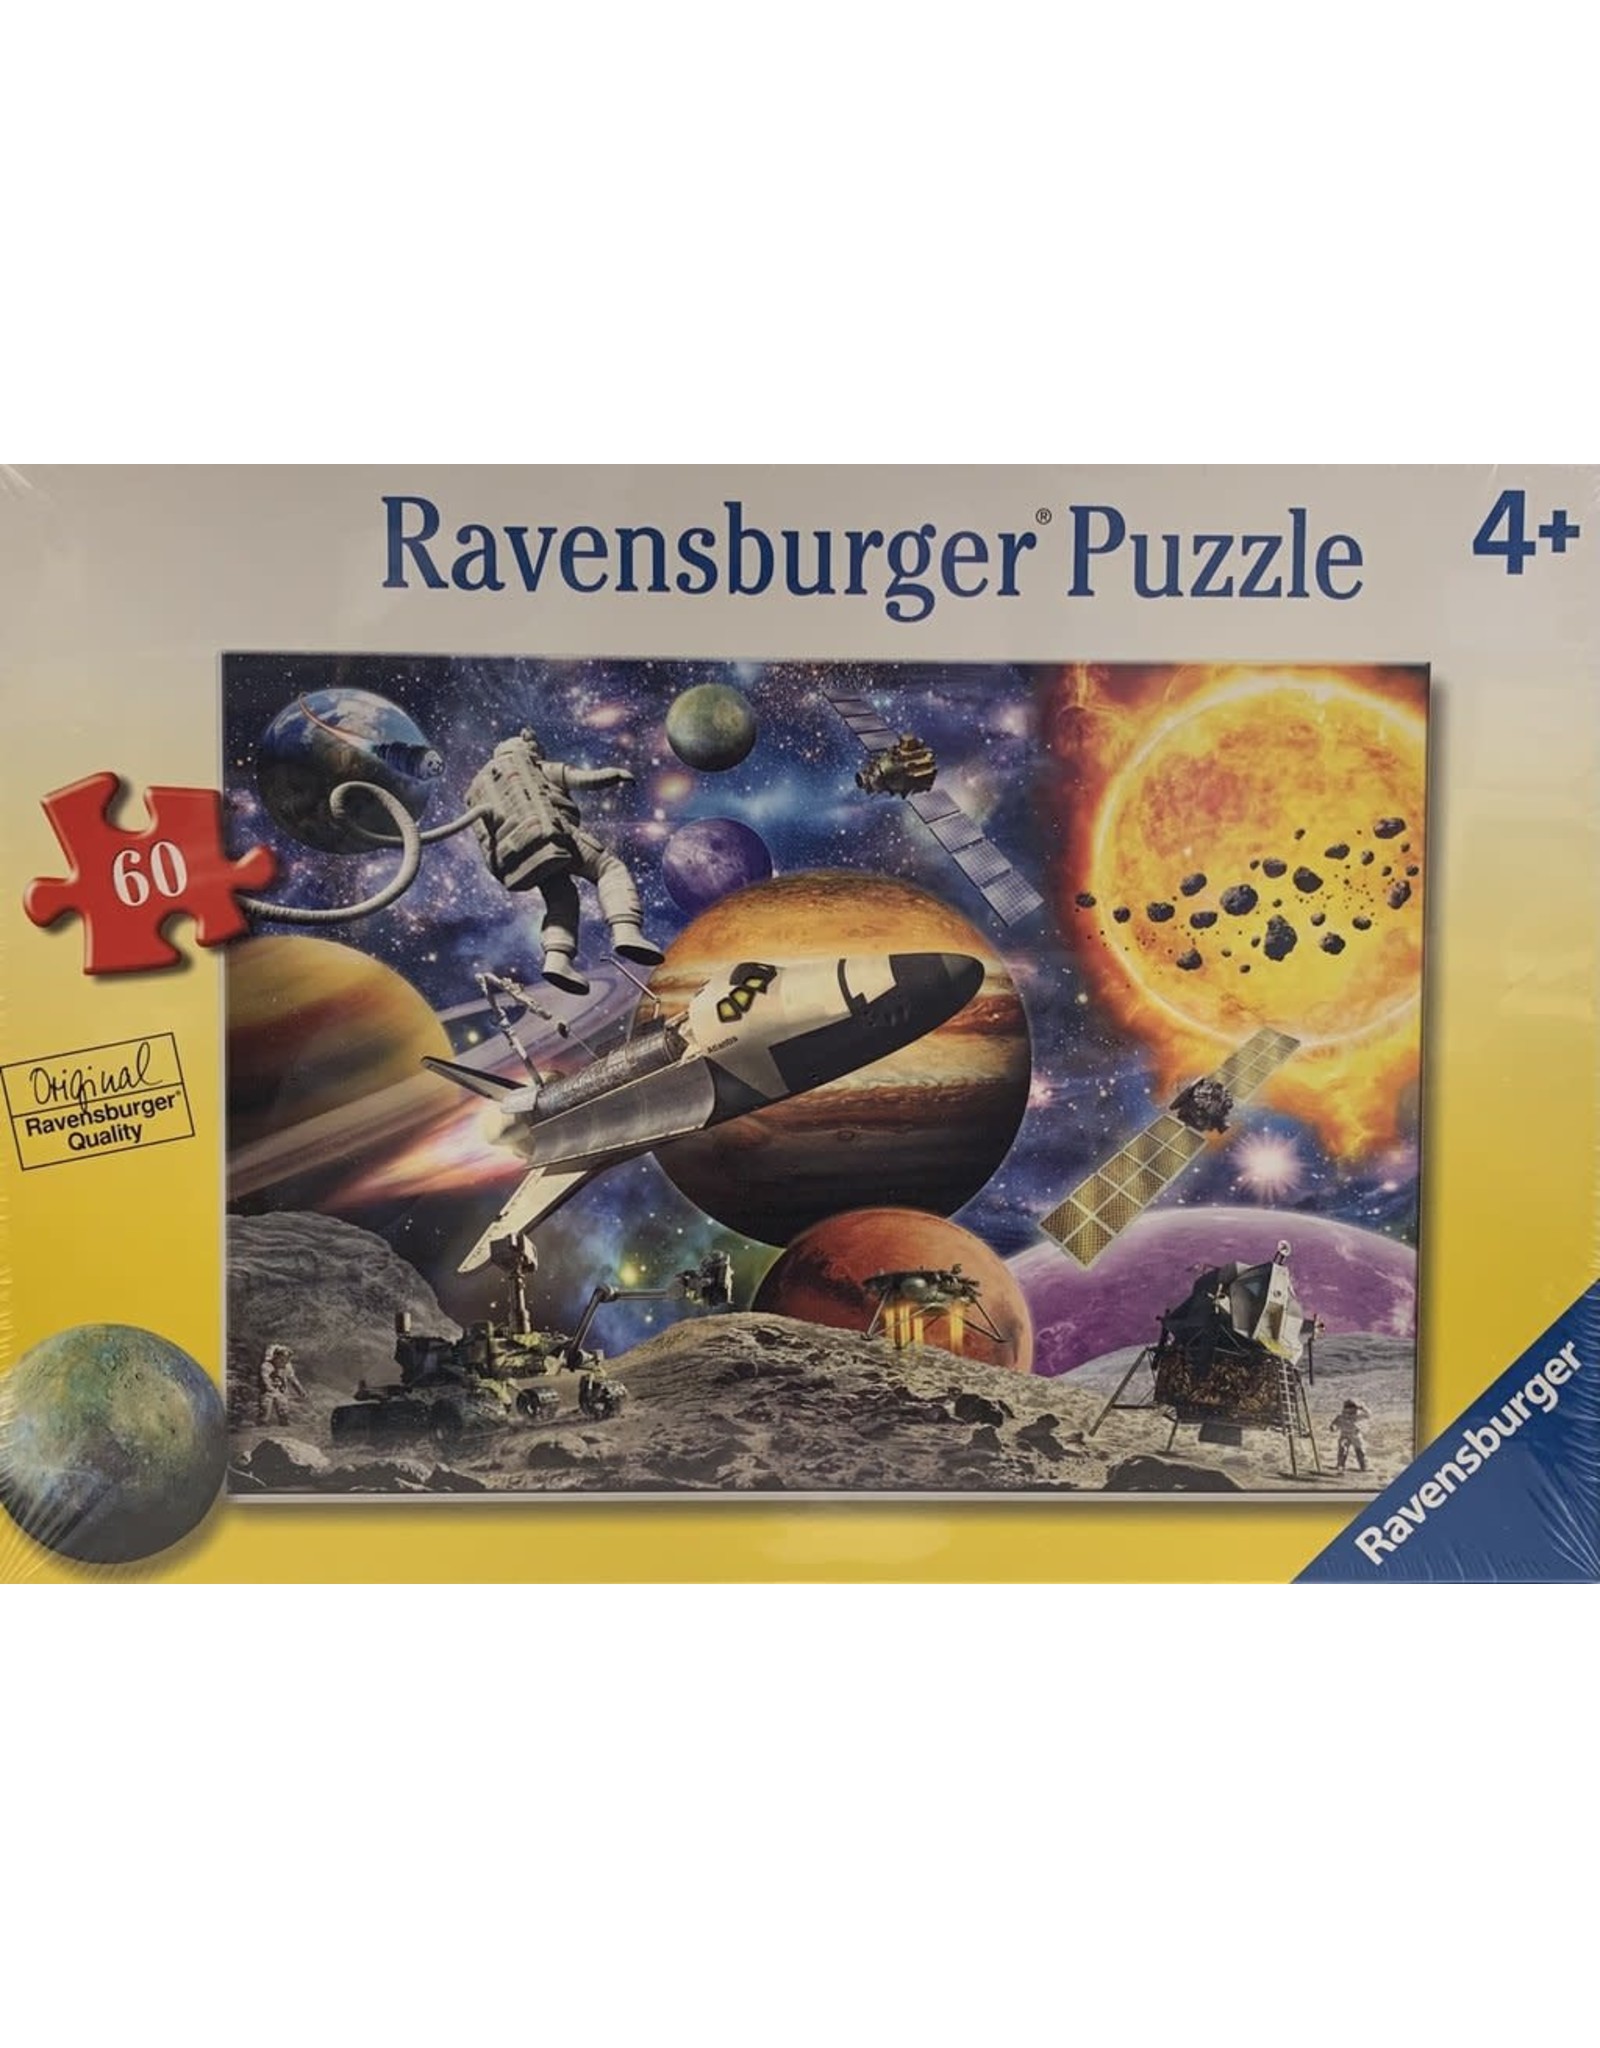 Ravensburger Explore Space 60 Piece Puzzle